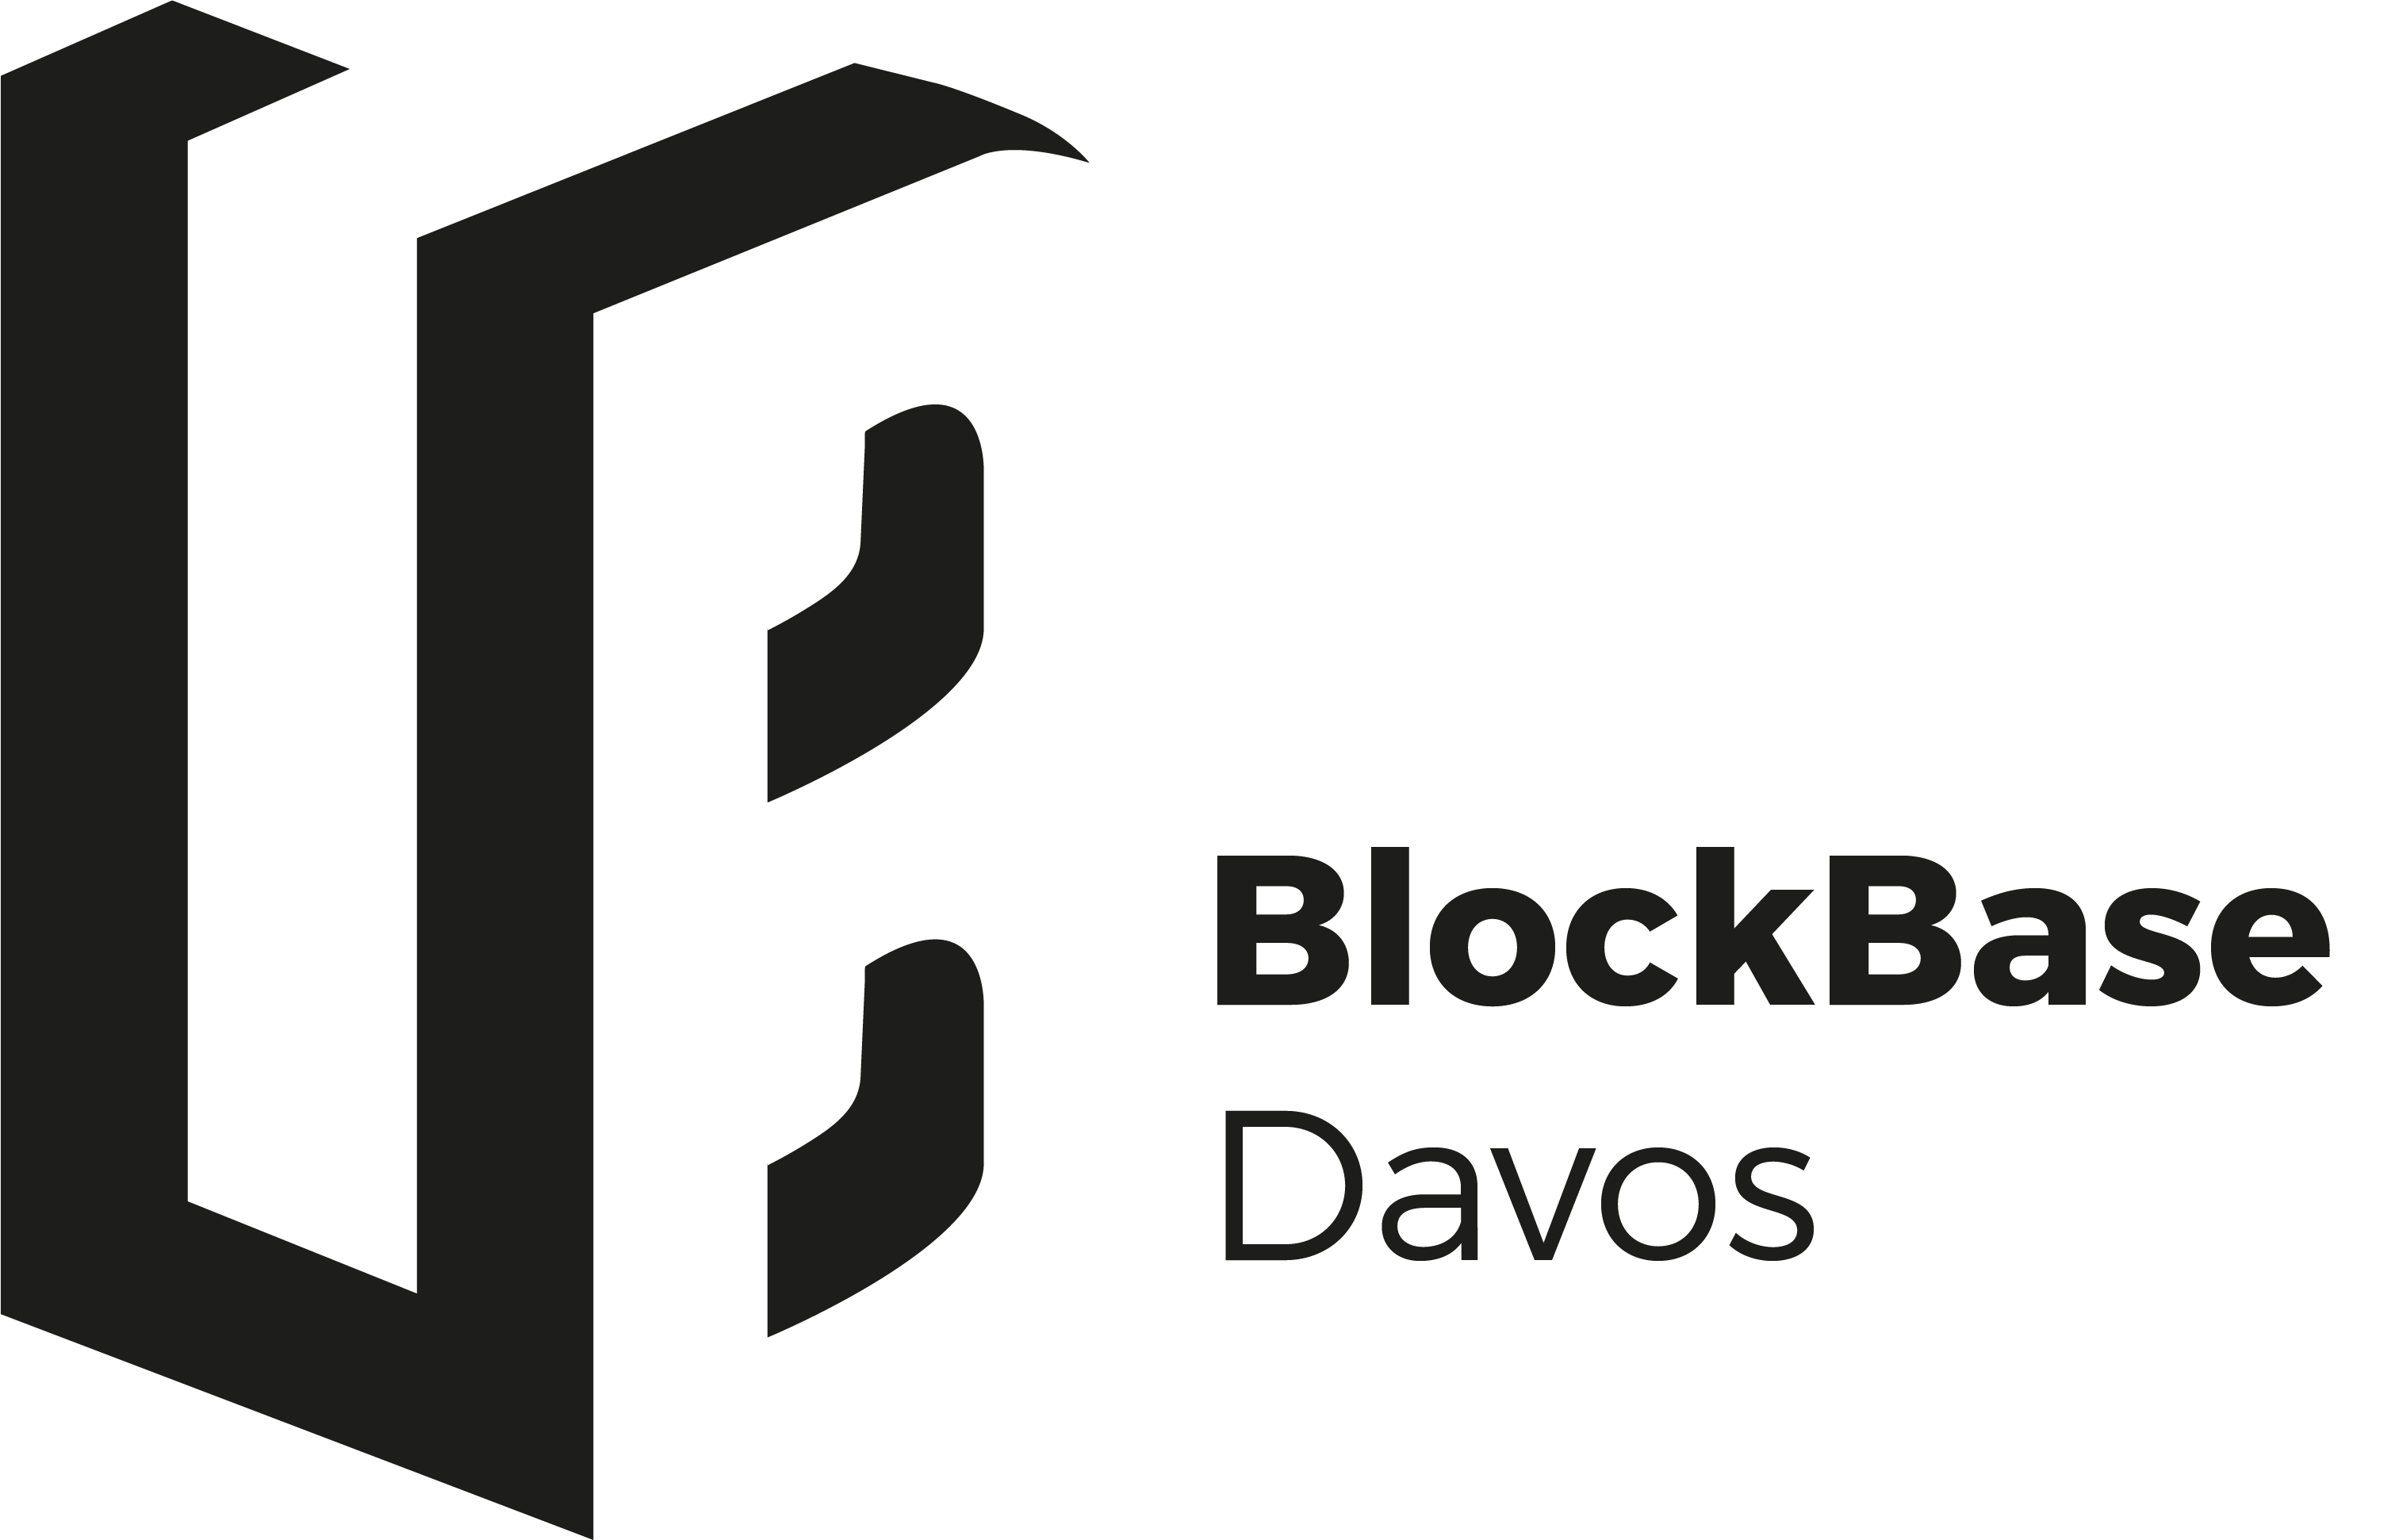 Davos BlockBase